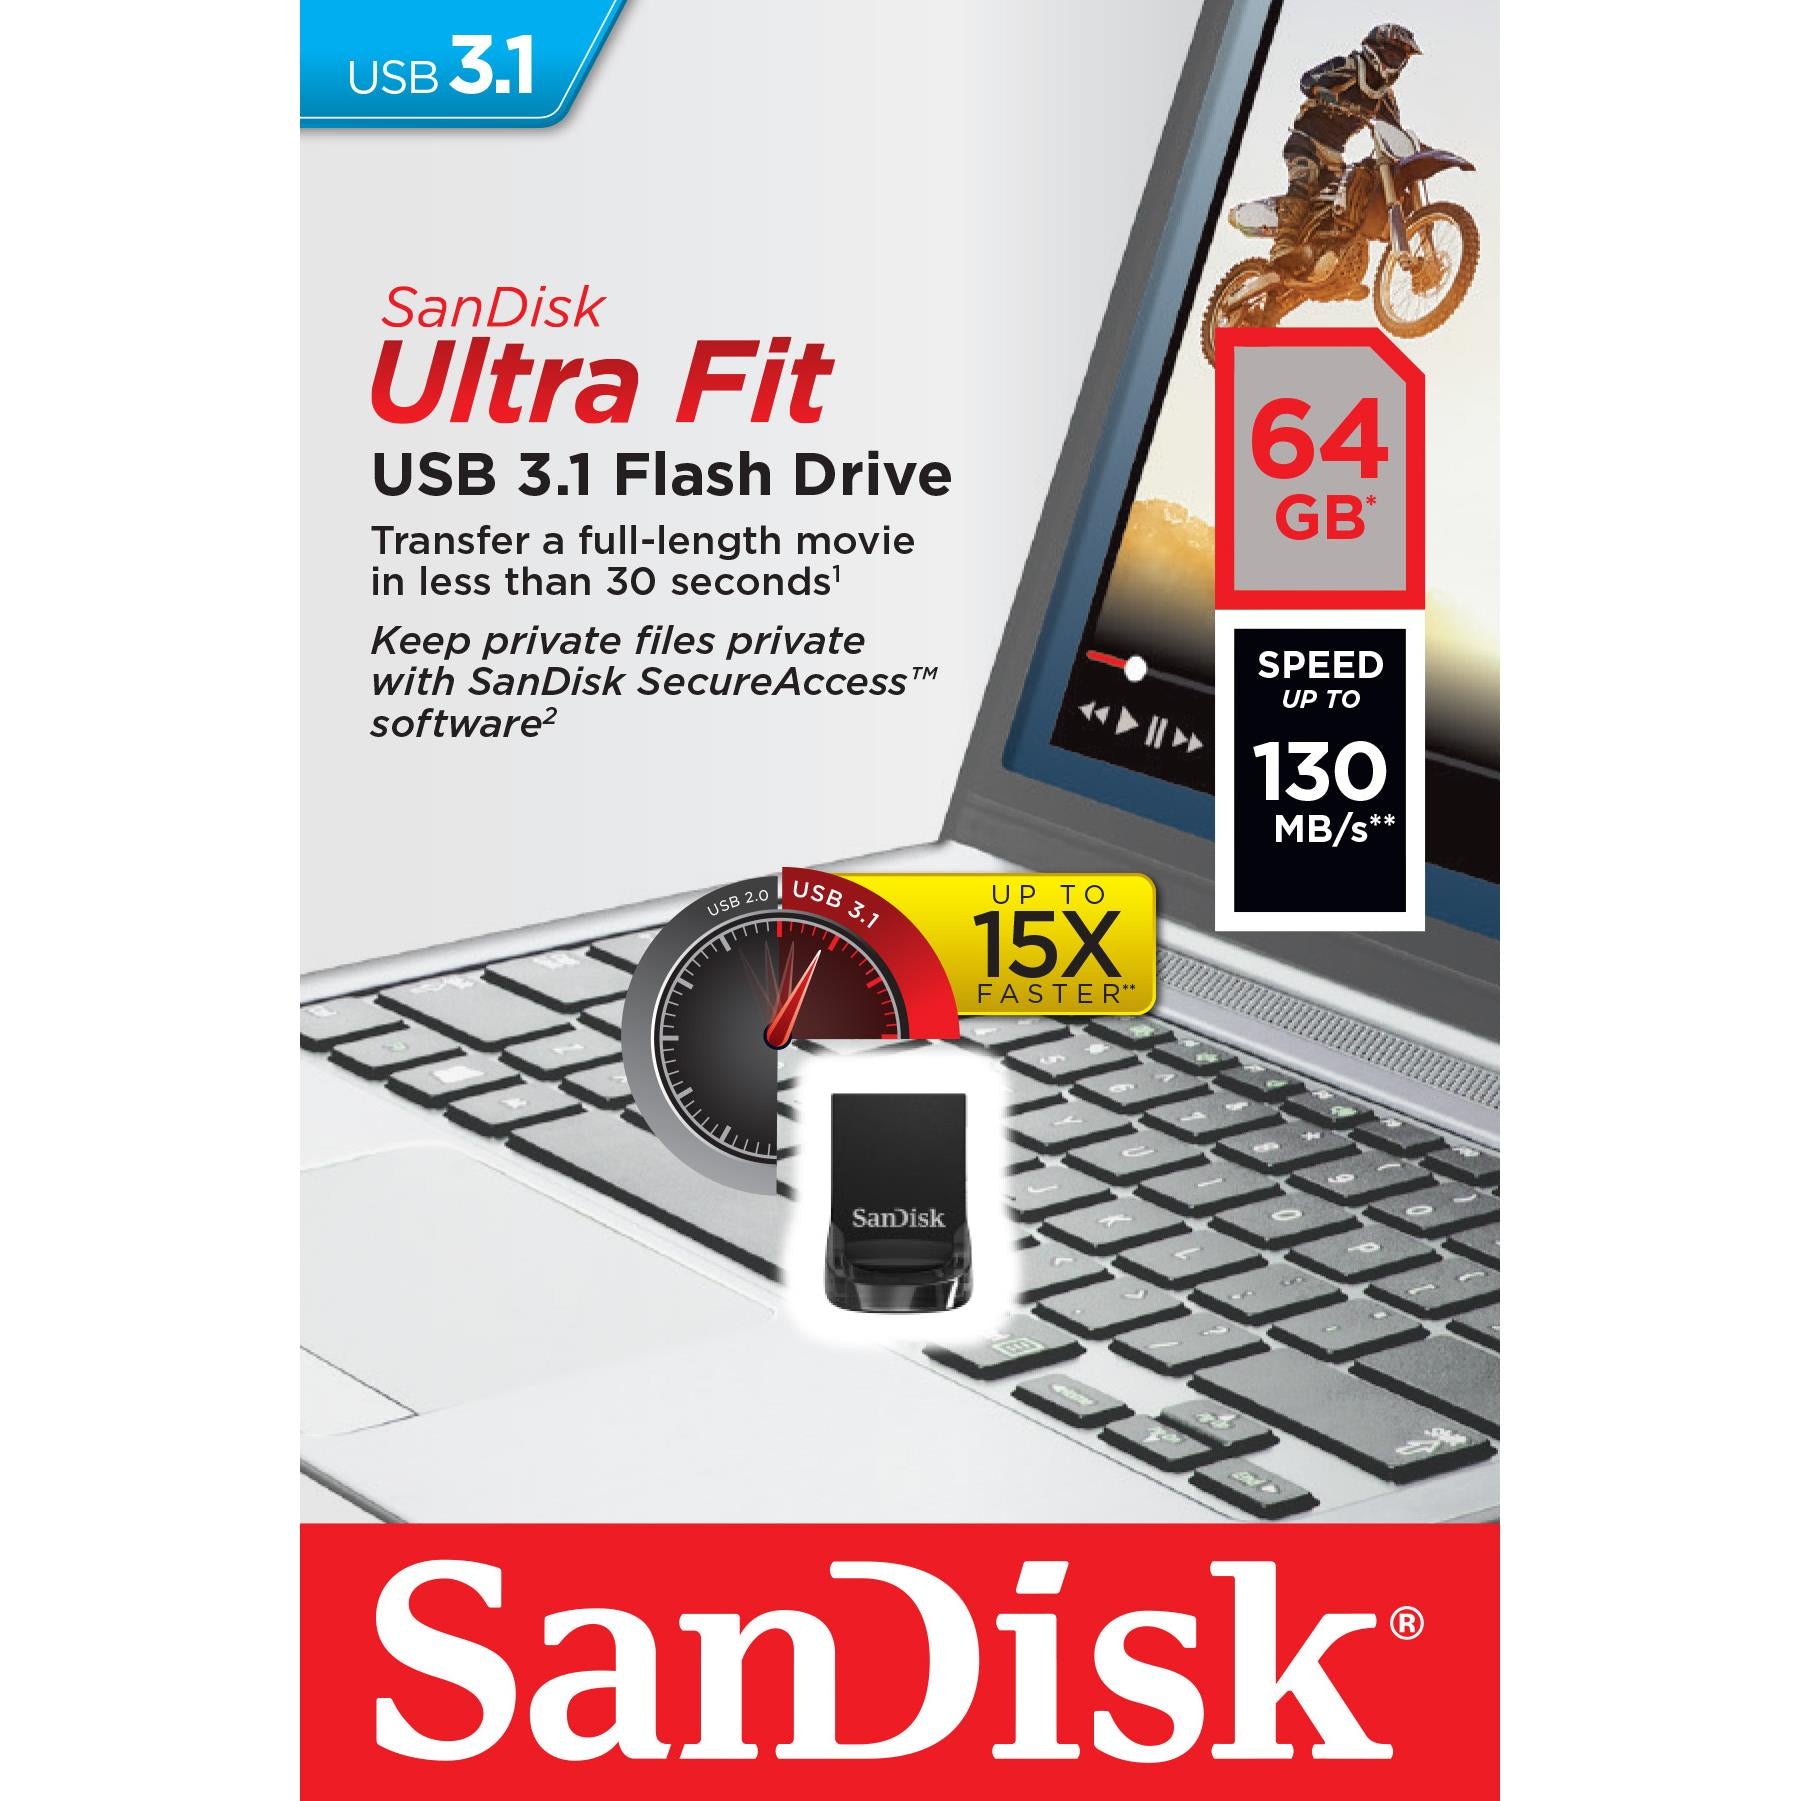 sandisk ultra fit usb 3.1 flash drive (64gb)